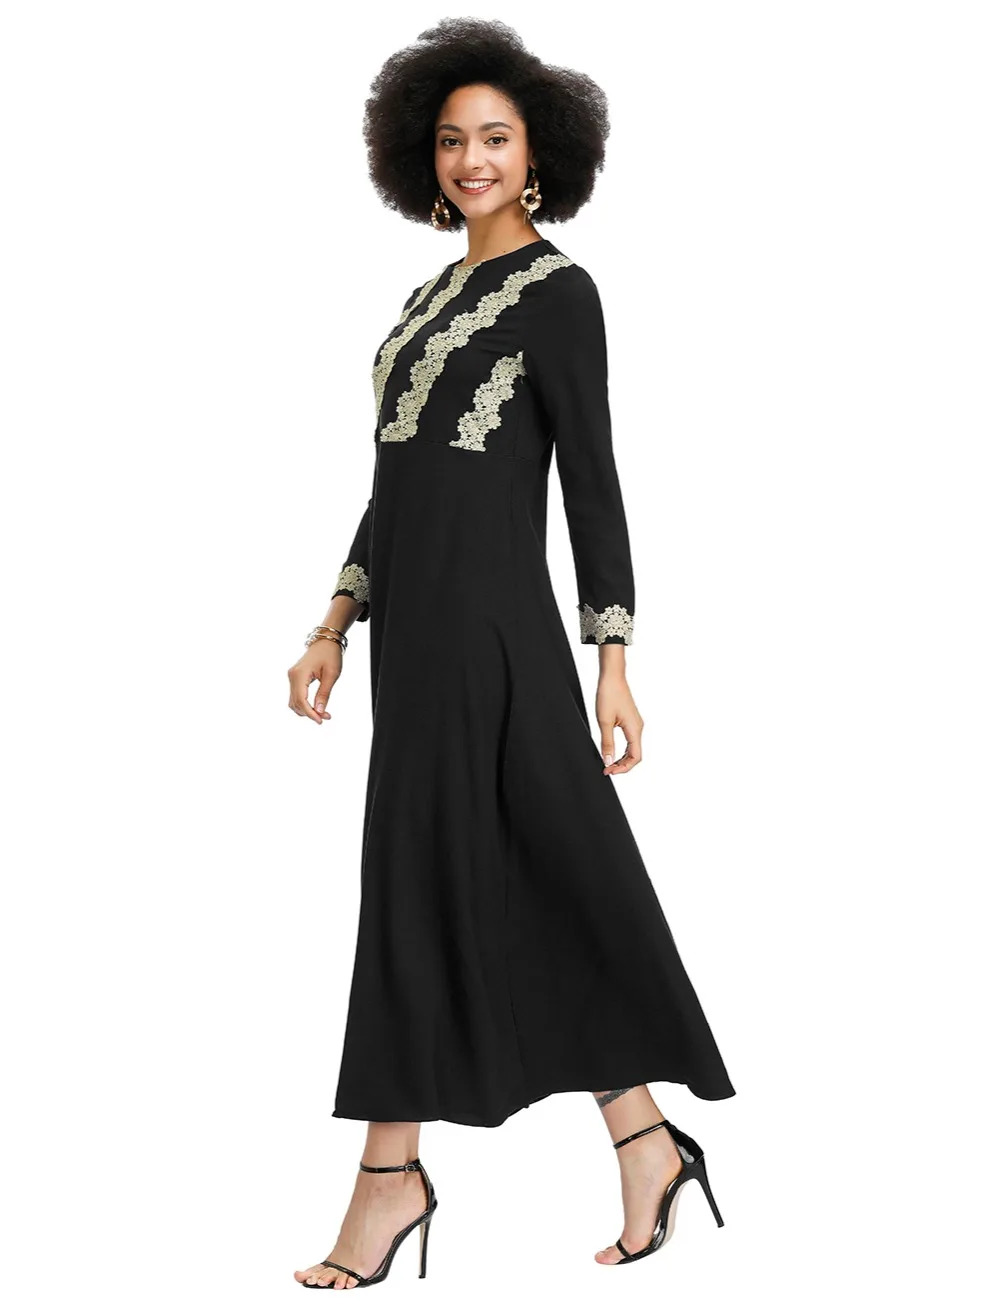 Fadzeco Новое Африканское платье Femme модный халат с золотой кружевной аппликацией платье с этническим принтом Макси платье африканская Дашики